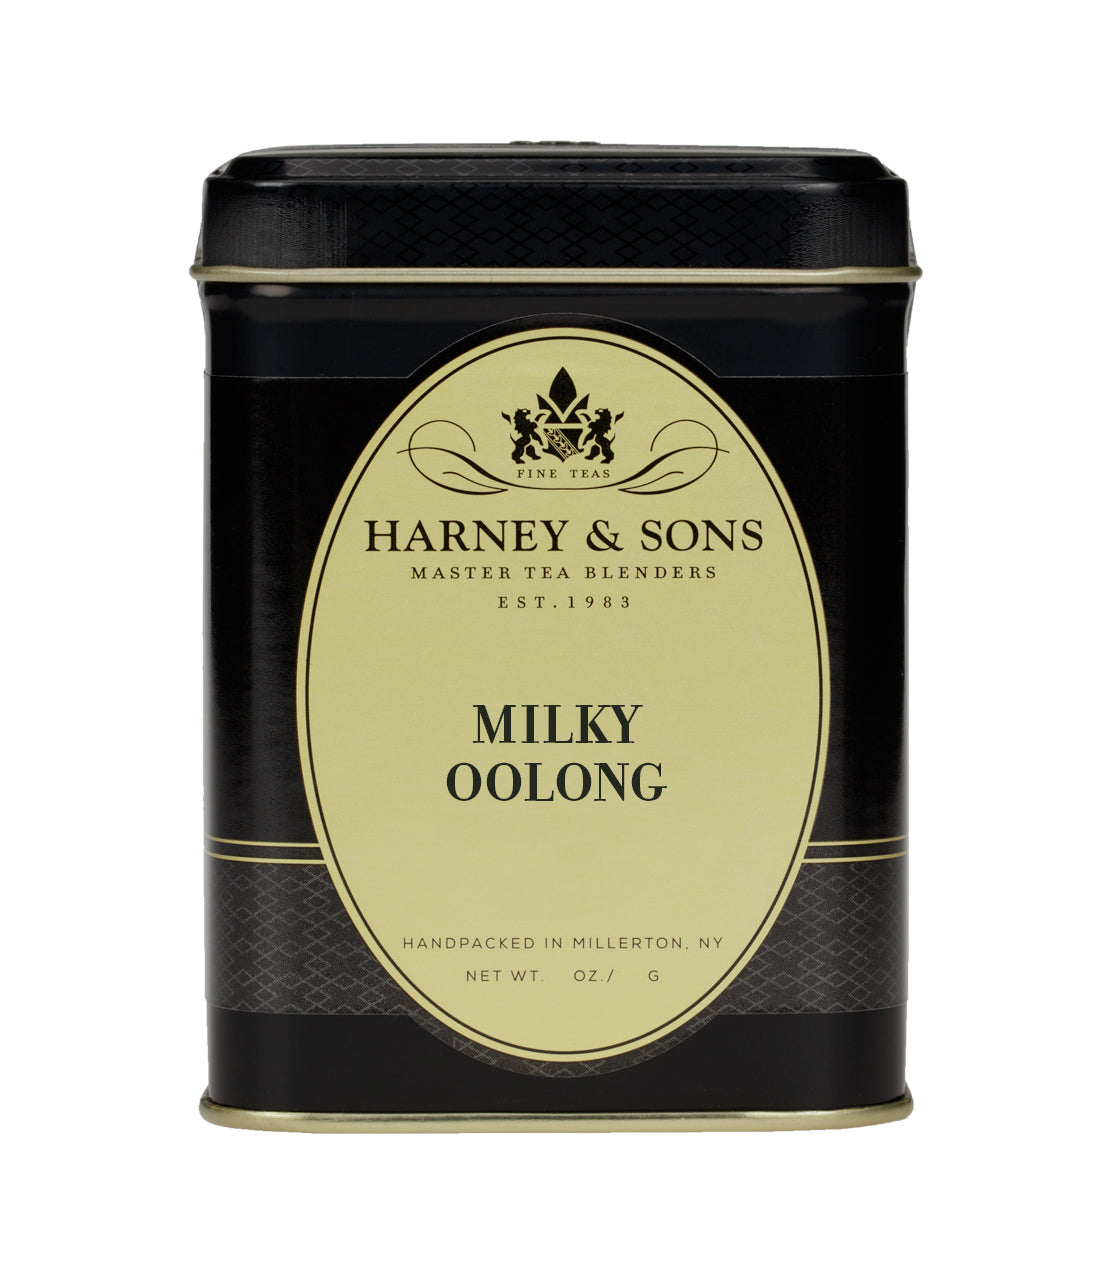 Milky Oolong - Loose 3 oz. Tin - Harney & Sons Fine Teas